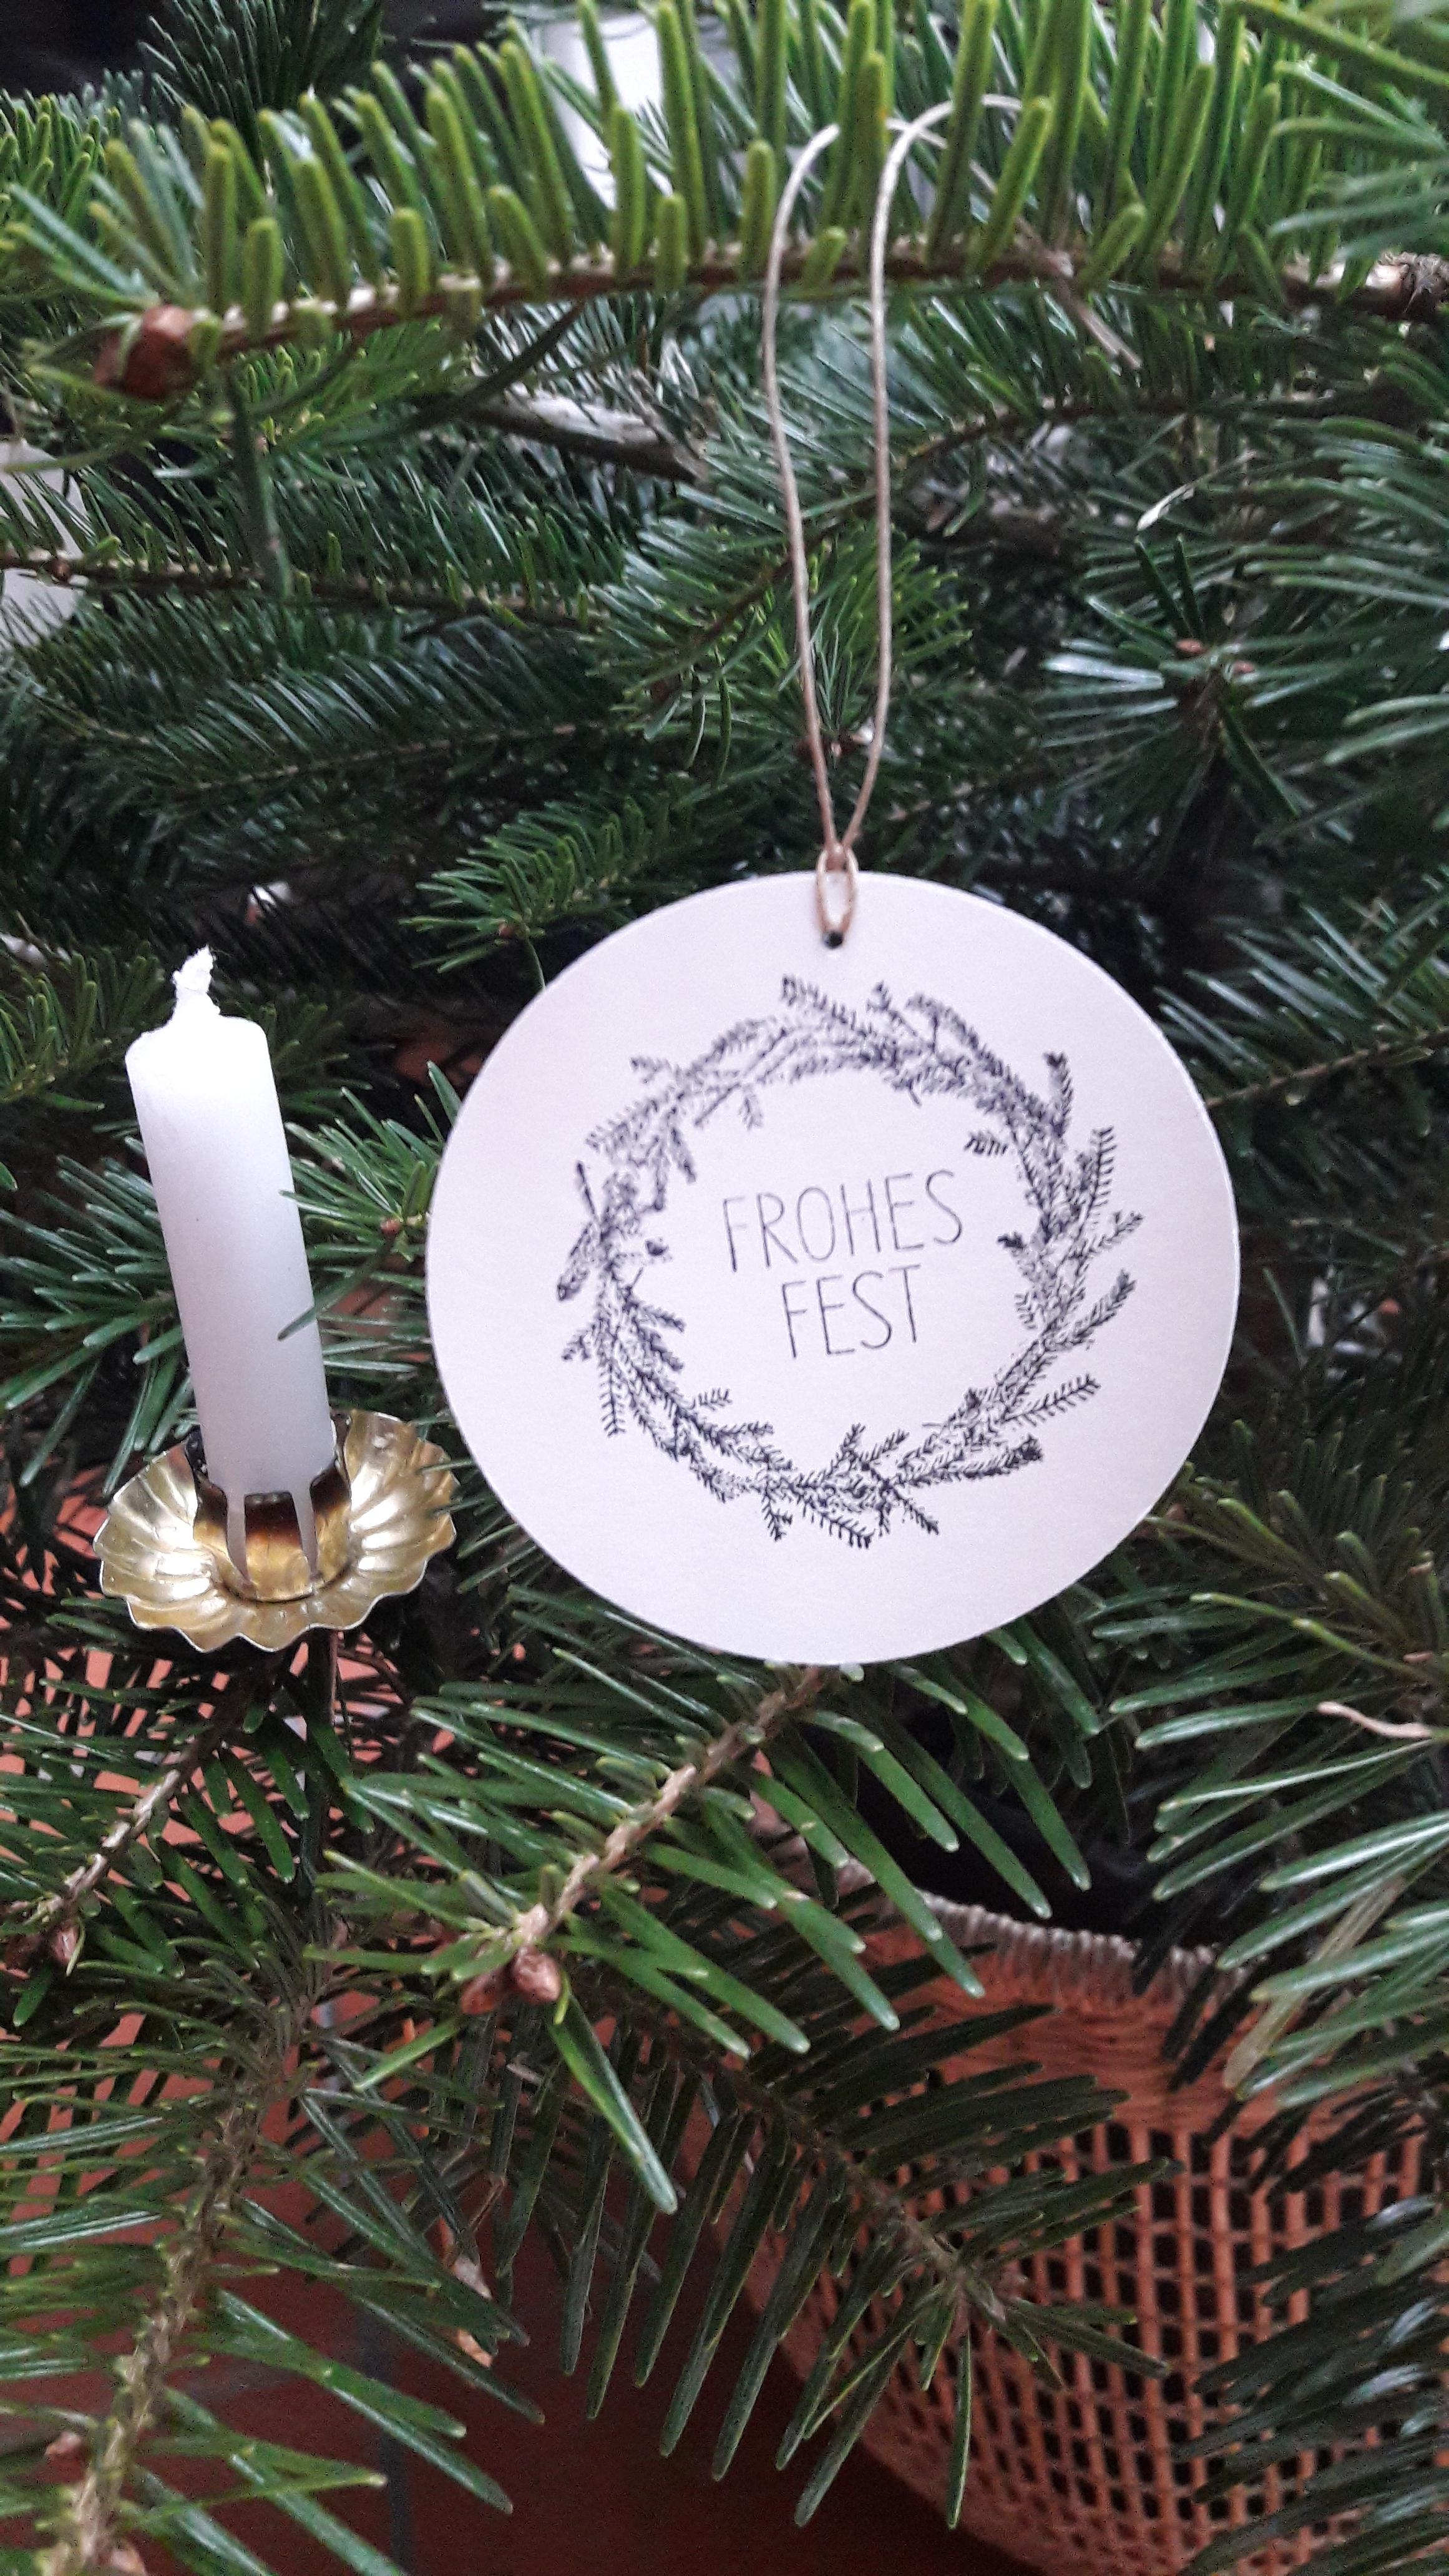 ... wünsche ich allen!!! 
#weihnachten #weihnachtsbaum #xmas #weihnachtsdeko #kerzen 